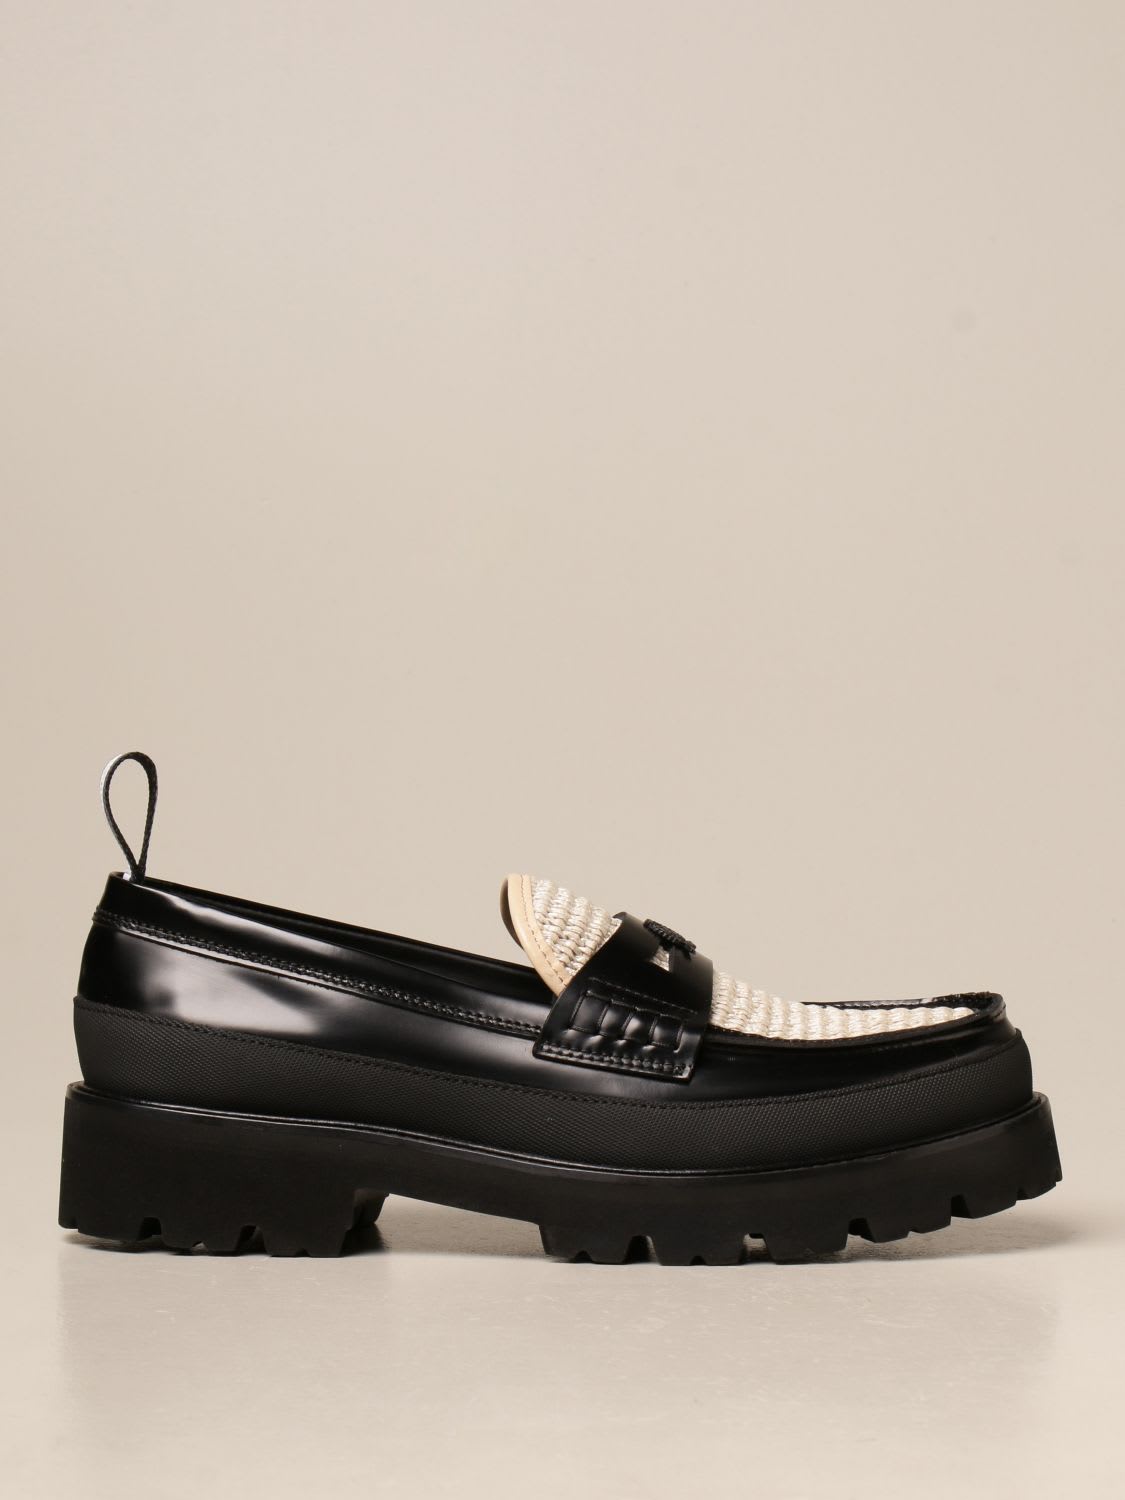 Hilfiger Denim Hilfiger Collection Loafers Shoes Men Hilfiger Collection